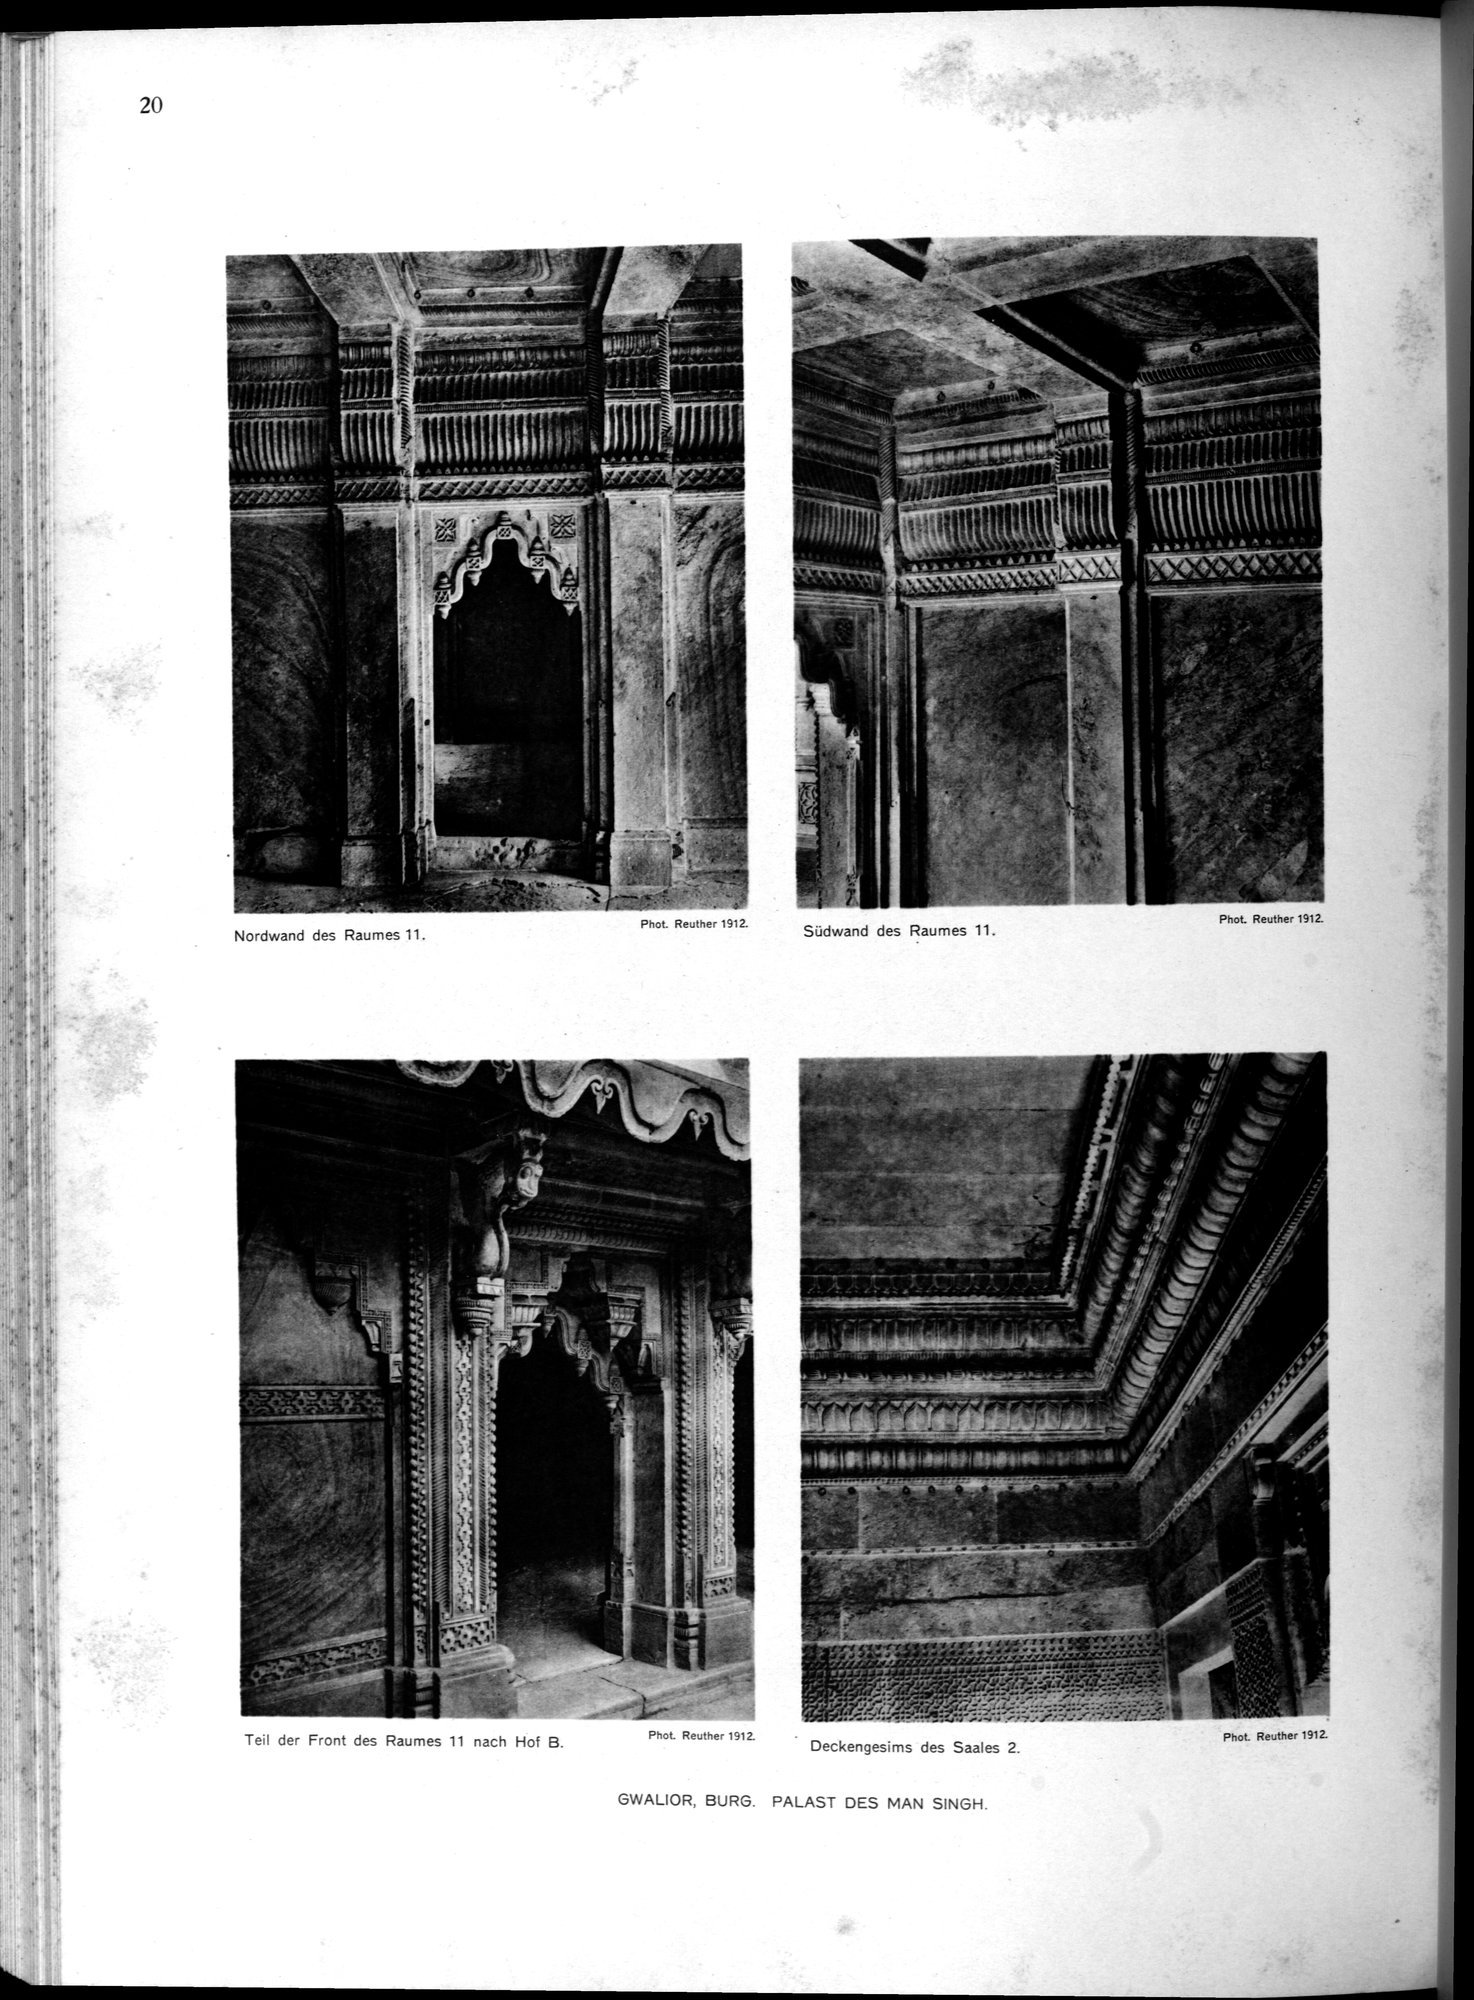 Indische Palaste und Wohnhauser : vol.1 / Page 136 (Grayscale High Resolution Image)